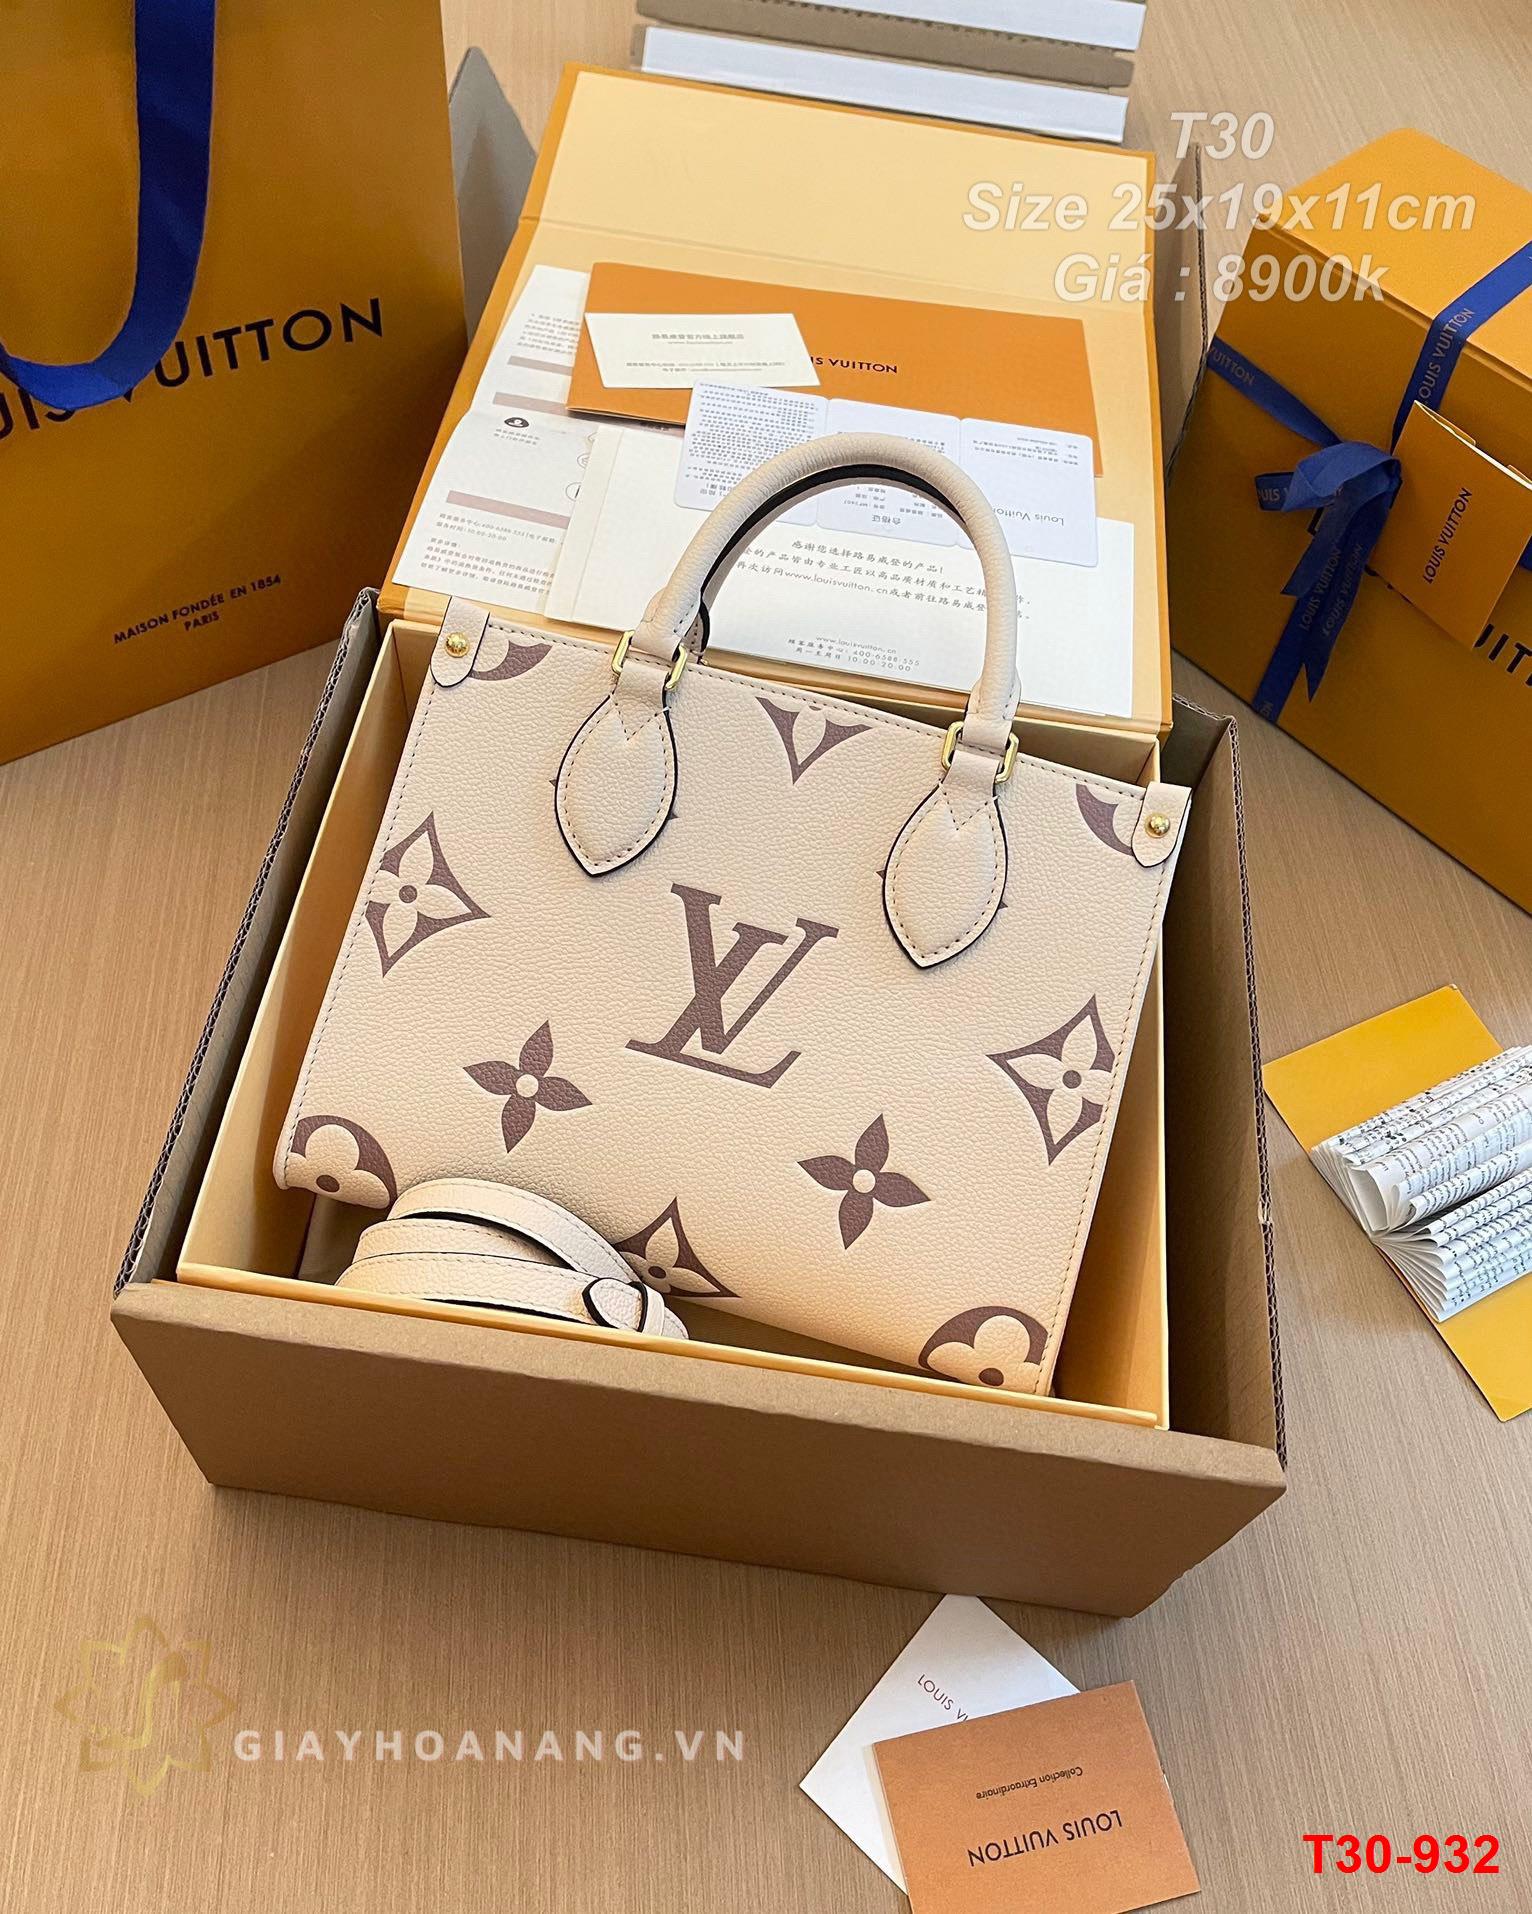 T30-932 Louis Vuitton túi size 25cm siêu cấp